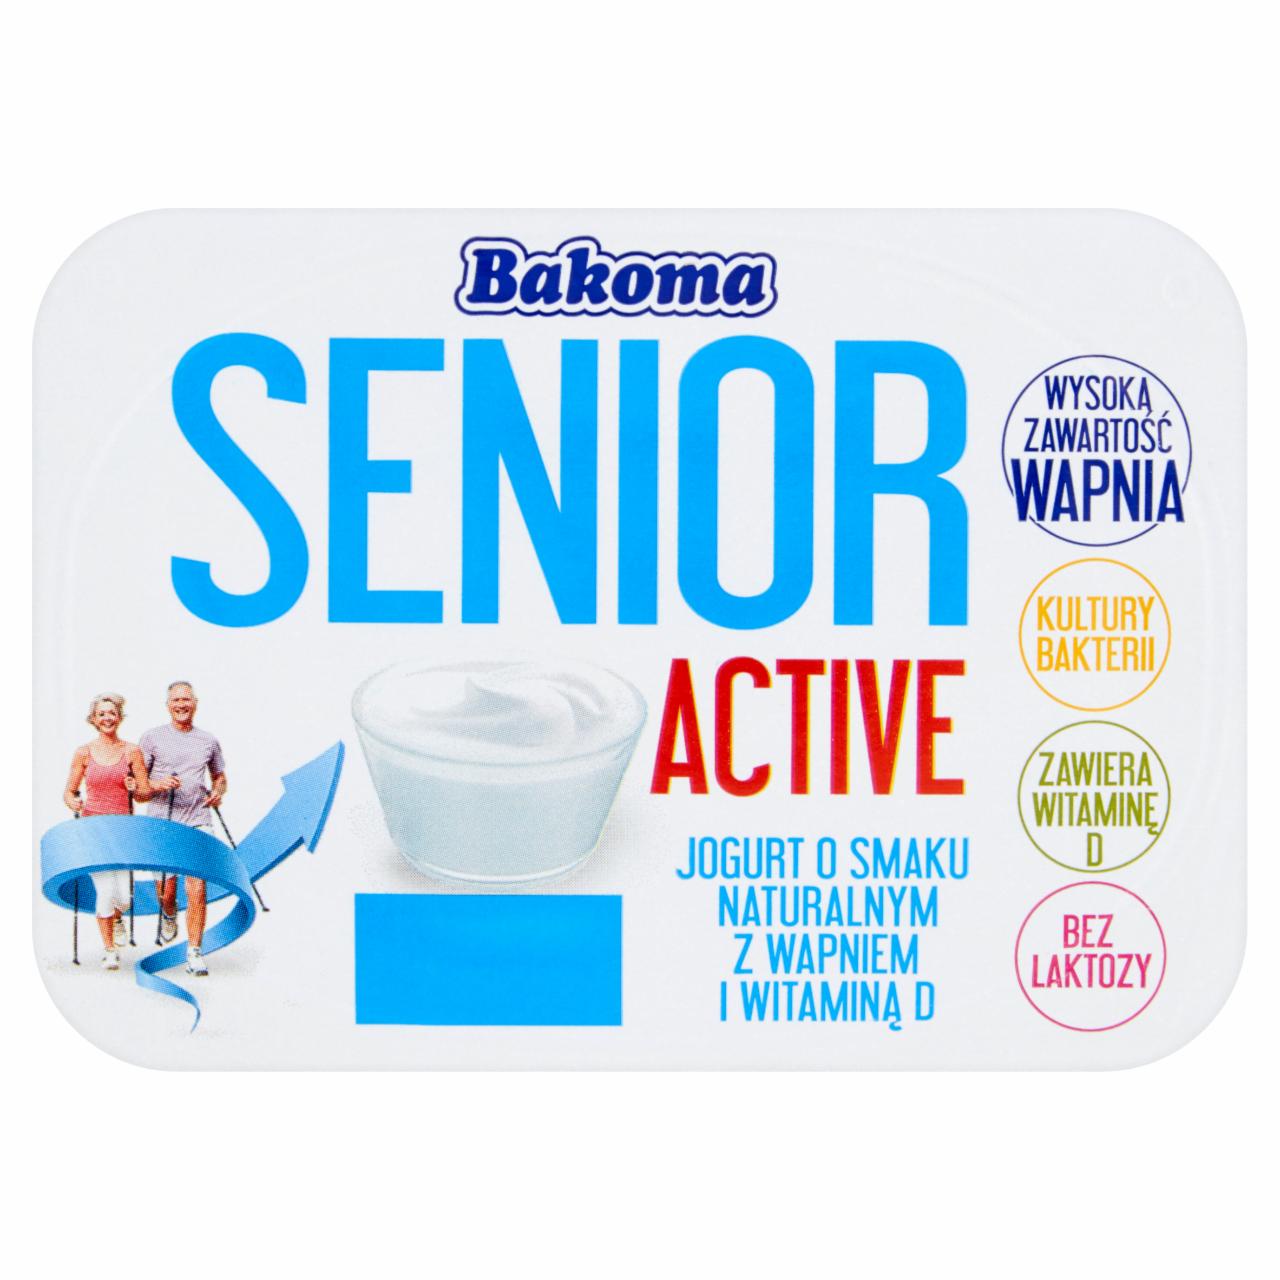 Zdjęcia - Bakoma Senior Active Jogurt o smaku naturalnym z wapniem i witaminą D 130 g